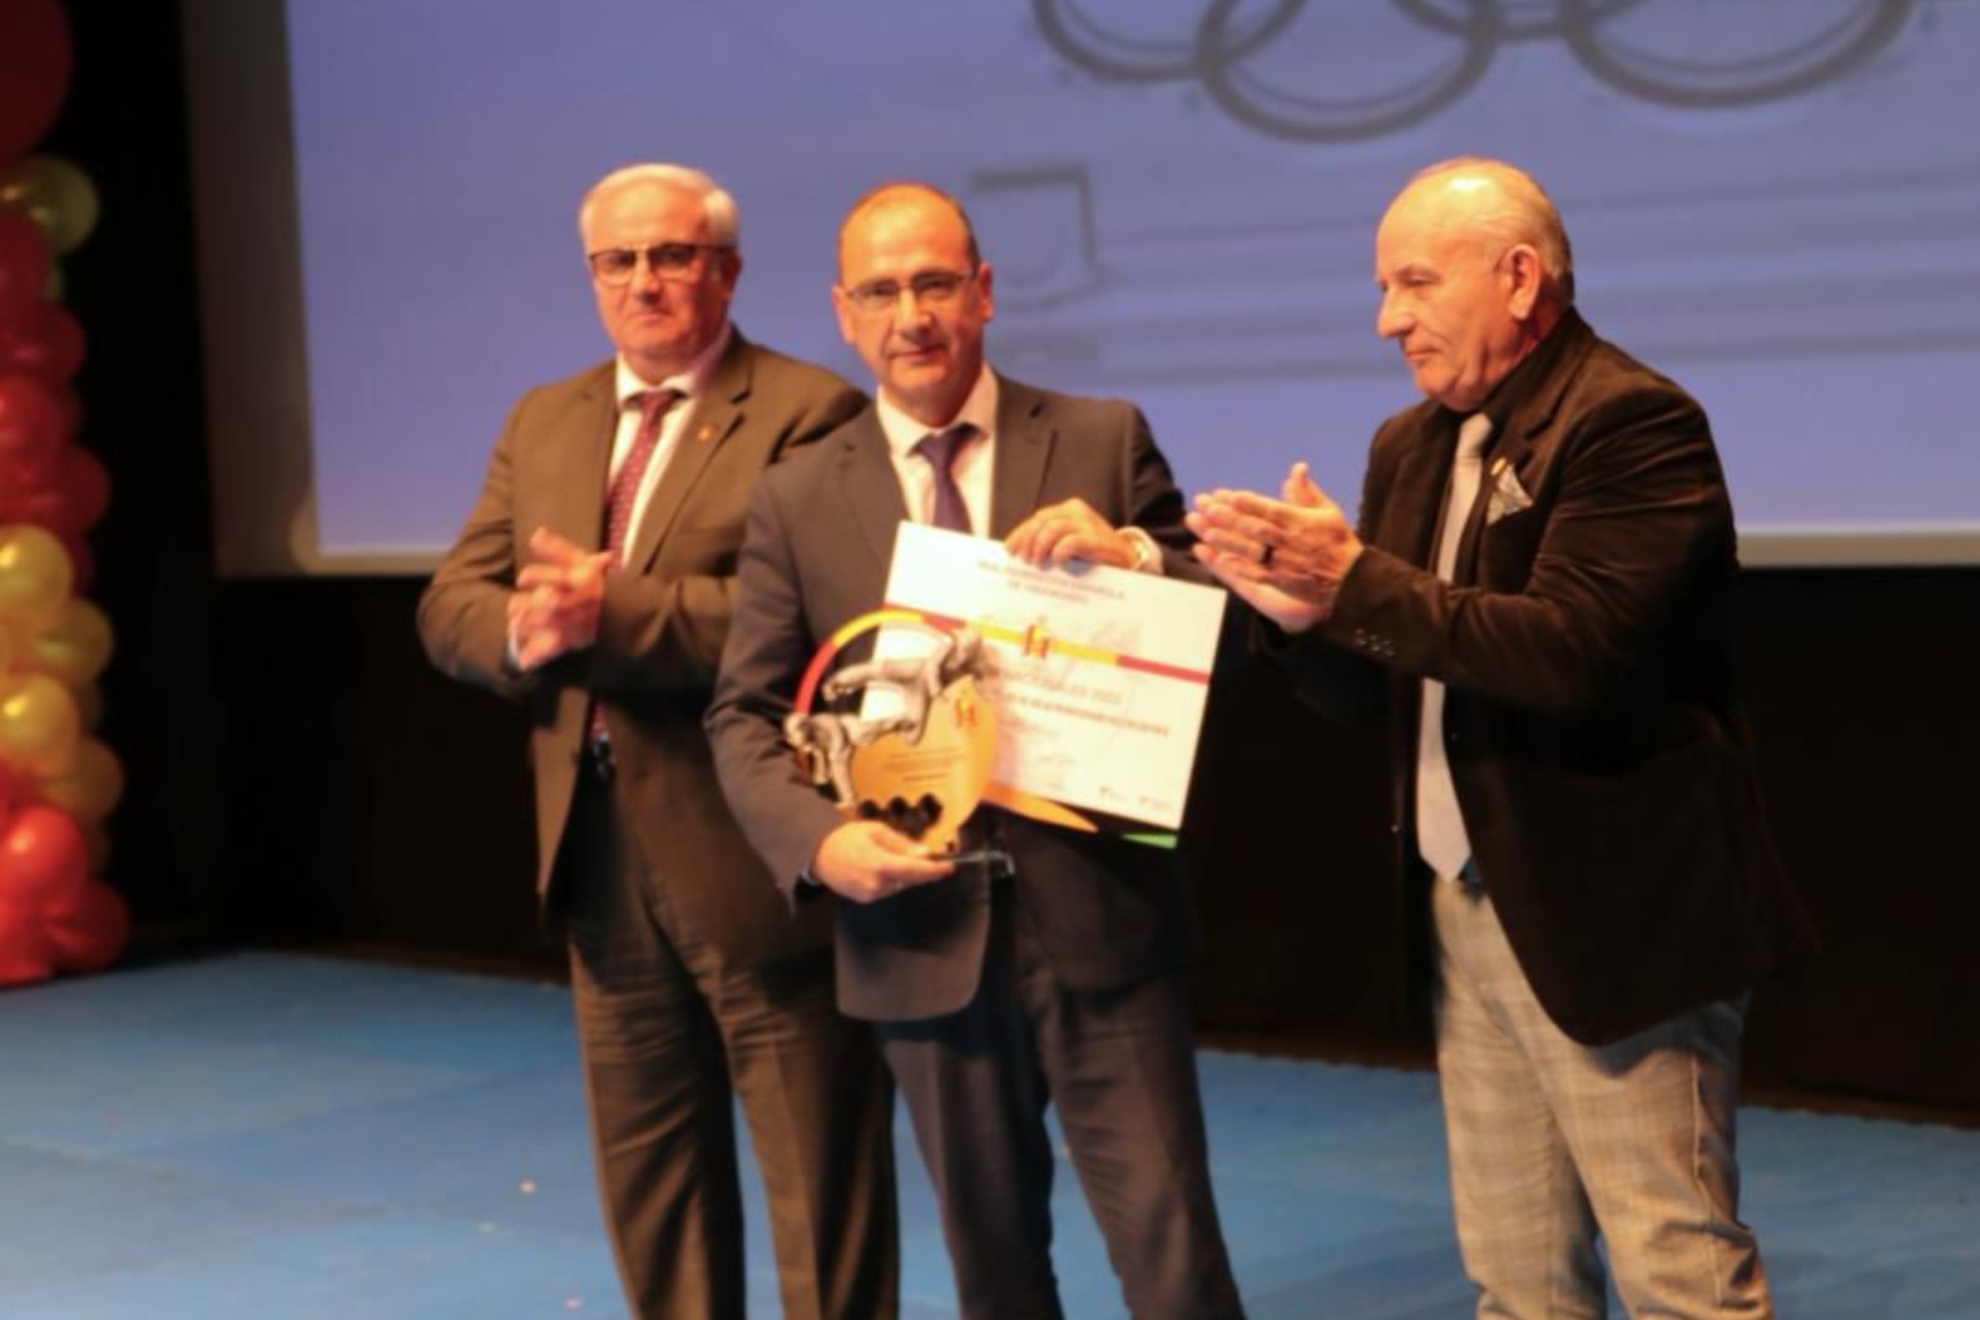 Juan Ignacio Gallardo, director de MARCA, recibe el galardón al medio de comunicación social que más y mejor ha promocionado el taekwondo.